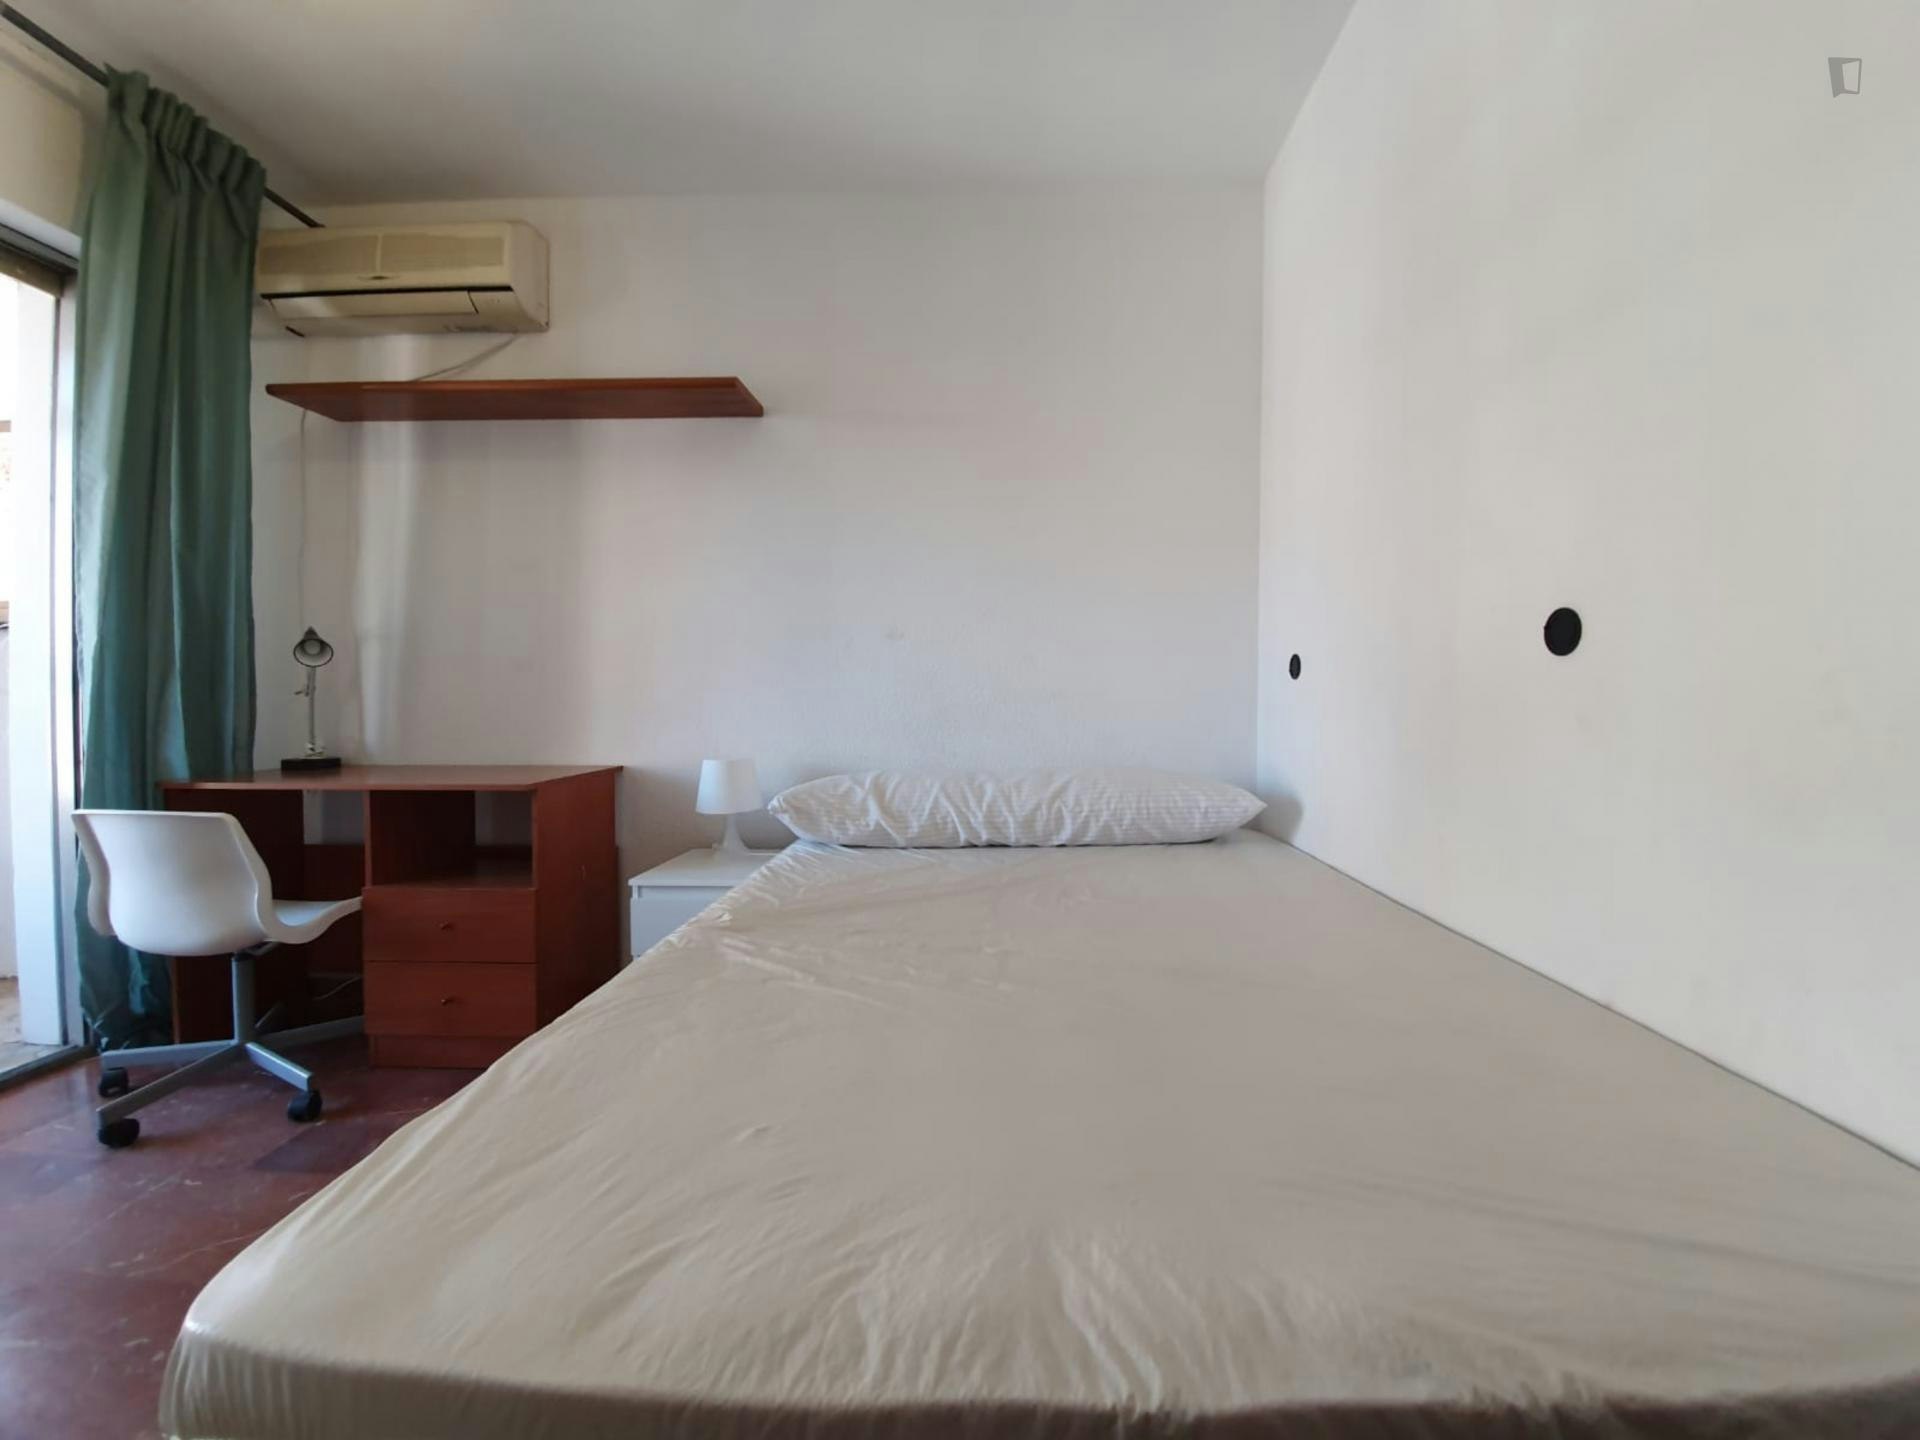 Breezy double bedroom in Camino de Ronda